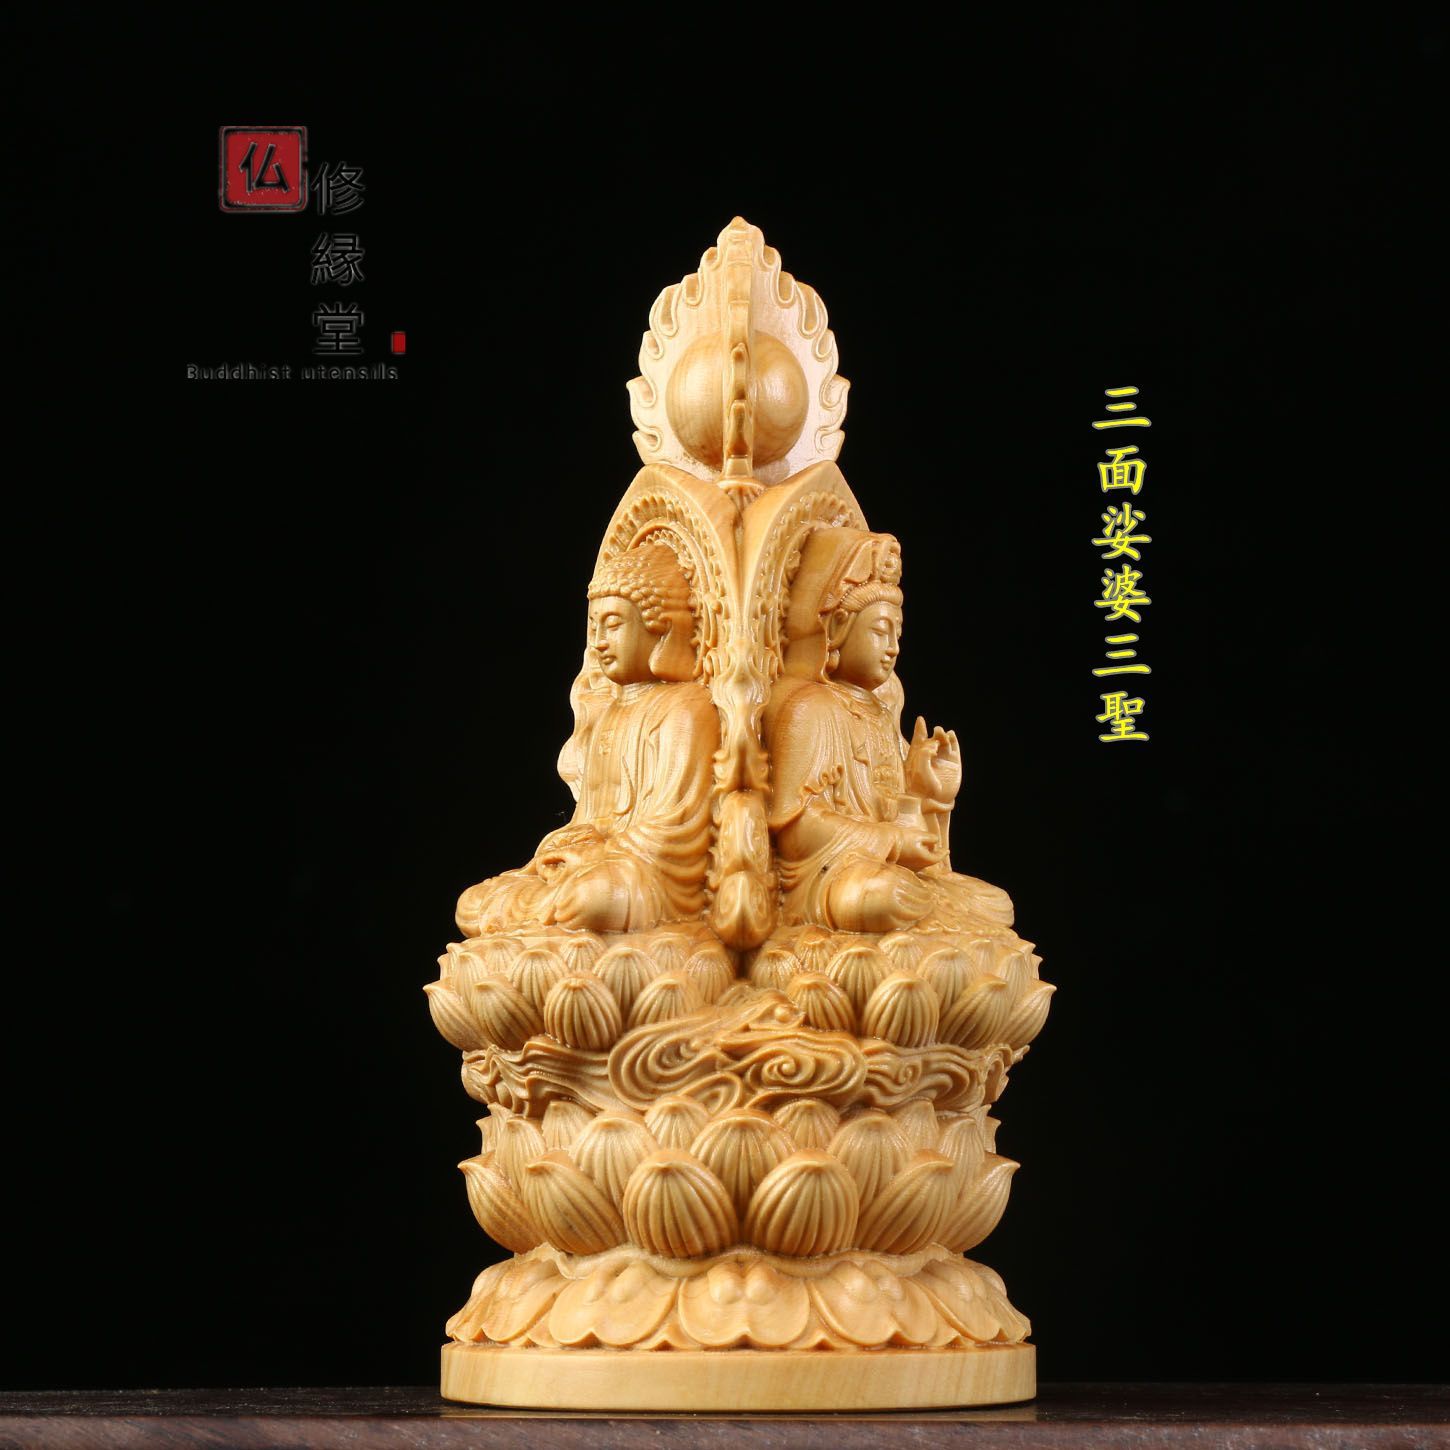 木彫り 仏像 娑婆三聖座像 財前彫刻 仏教工芸品 柘植材 仏師で仕上げ 